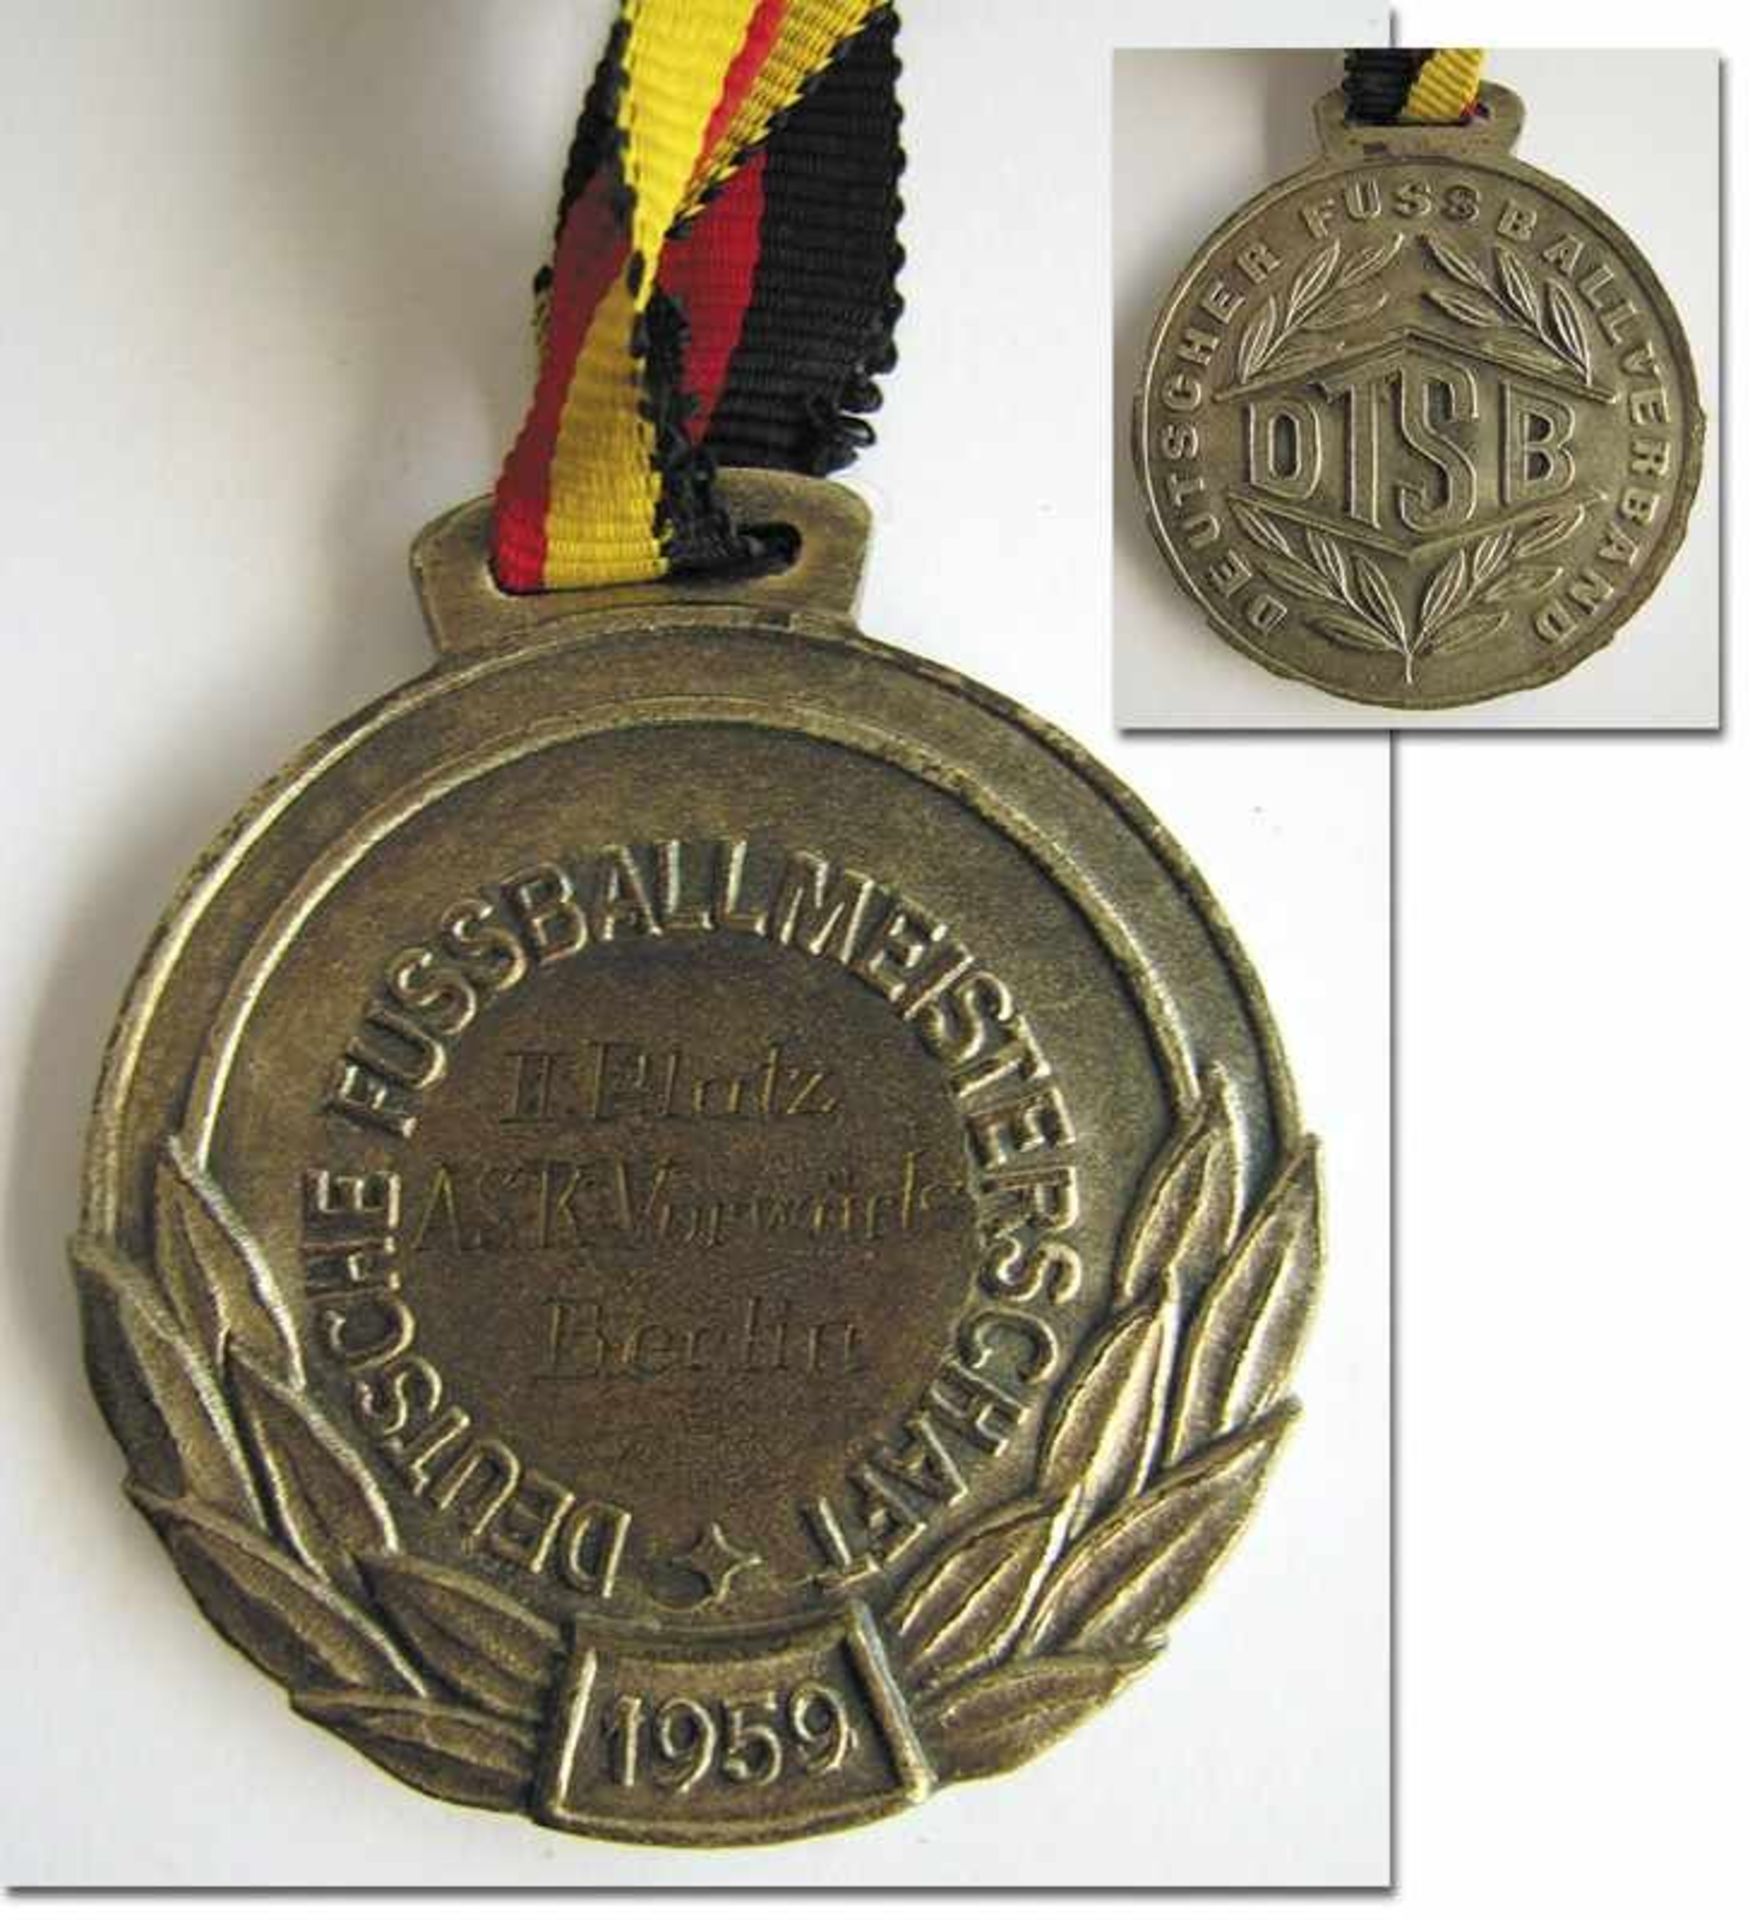 GDR Football Championships 1959 Medal - Winner medal for "ASK Vorwärts Berlin Deutscher II. Platz